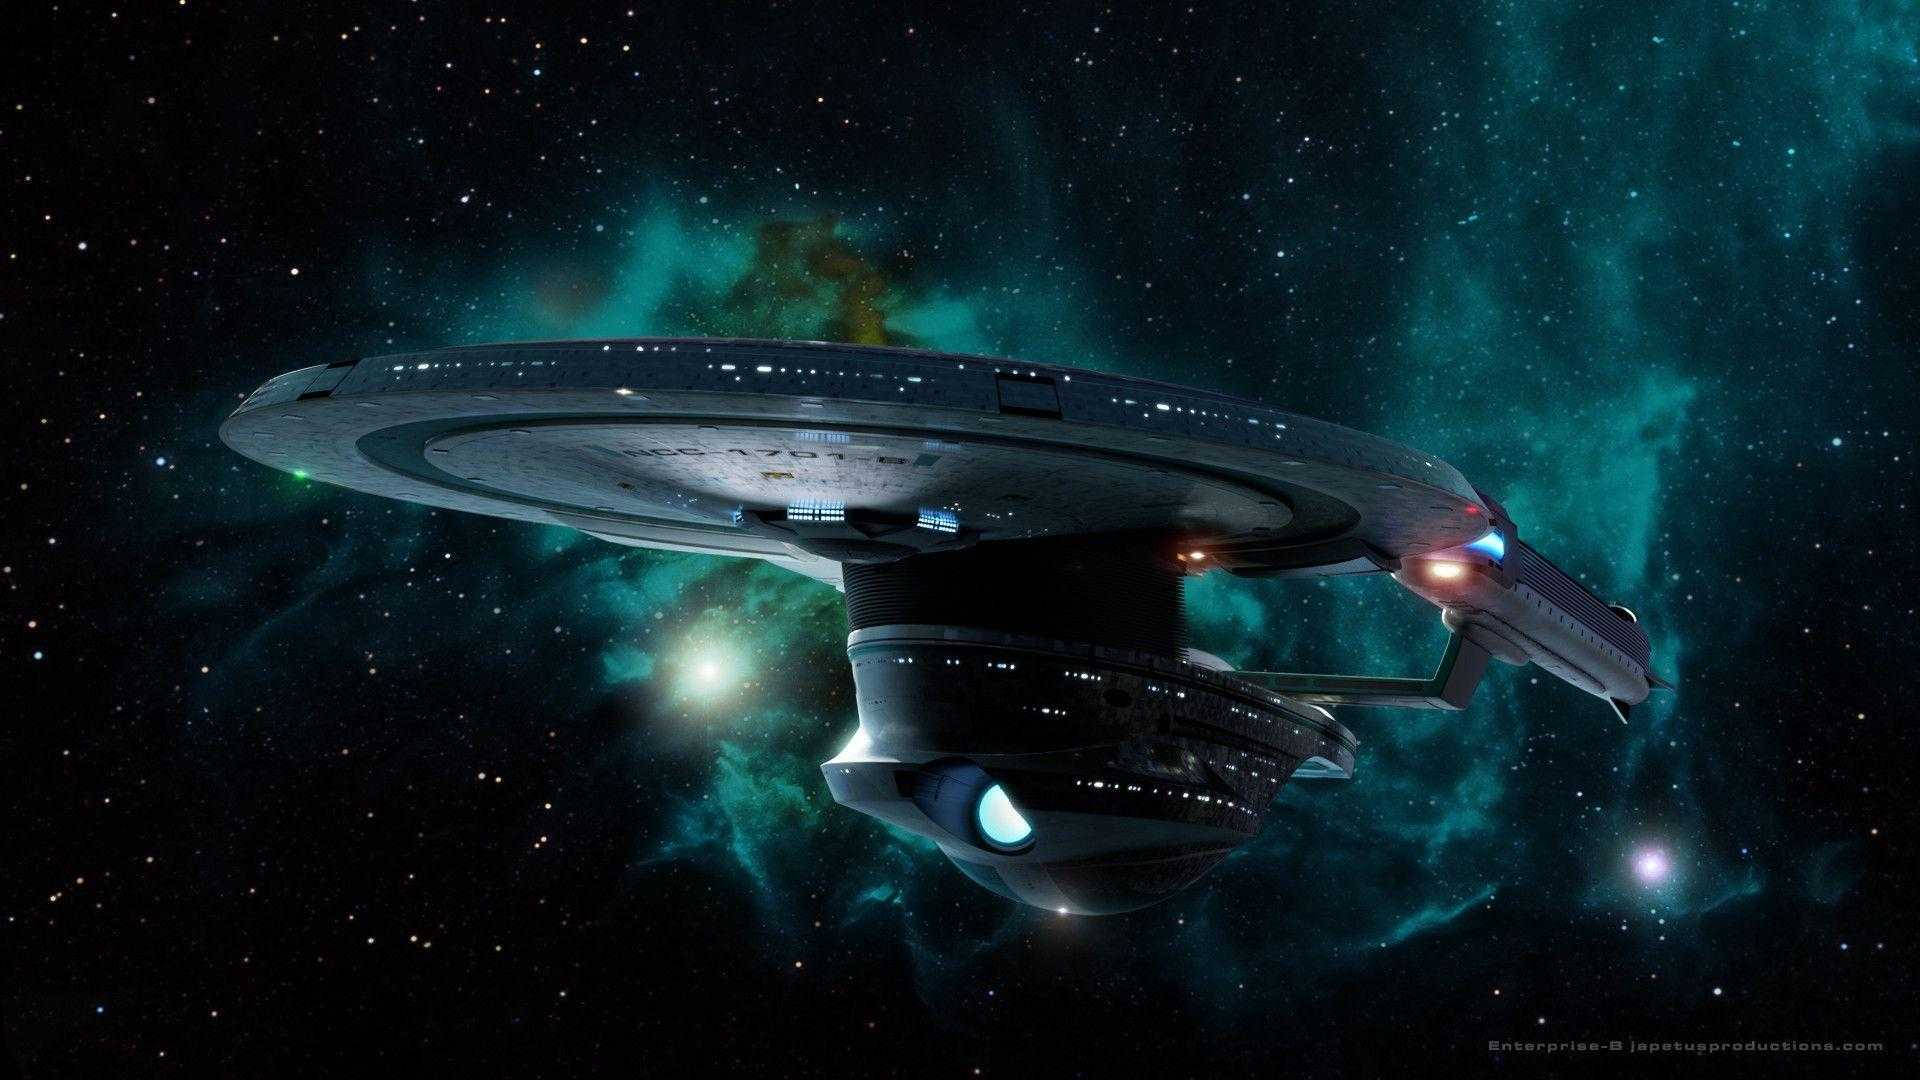 Ultra-HD wallpaper of Star Trek Ship. 